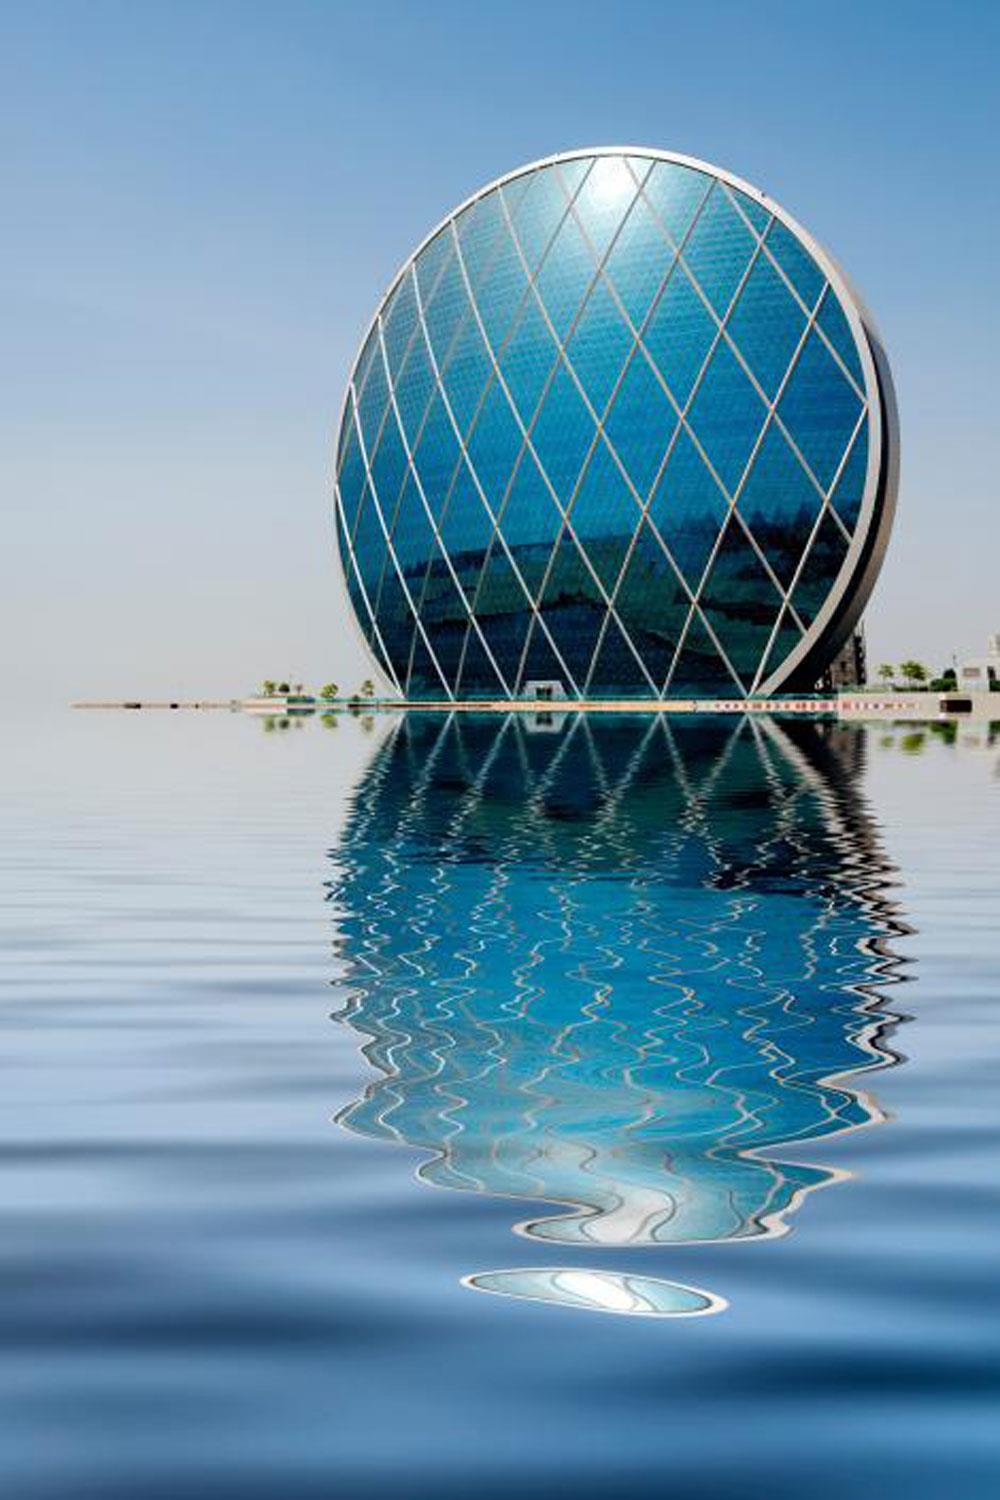 Aldar Headquarters (Abu Dhabi): Tòa nhà chọc trời hình tròn lạ thường cực kỳ độc đáo có một không hai trên thế giới. Aldar được bầu chọn là “Thiết kế tương lai tuyệt vời nhất” năm 2013.